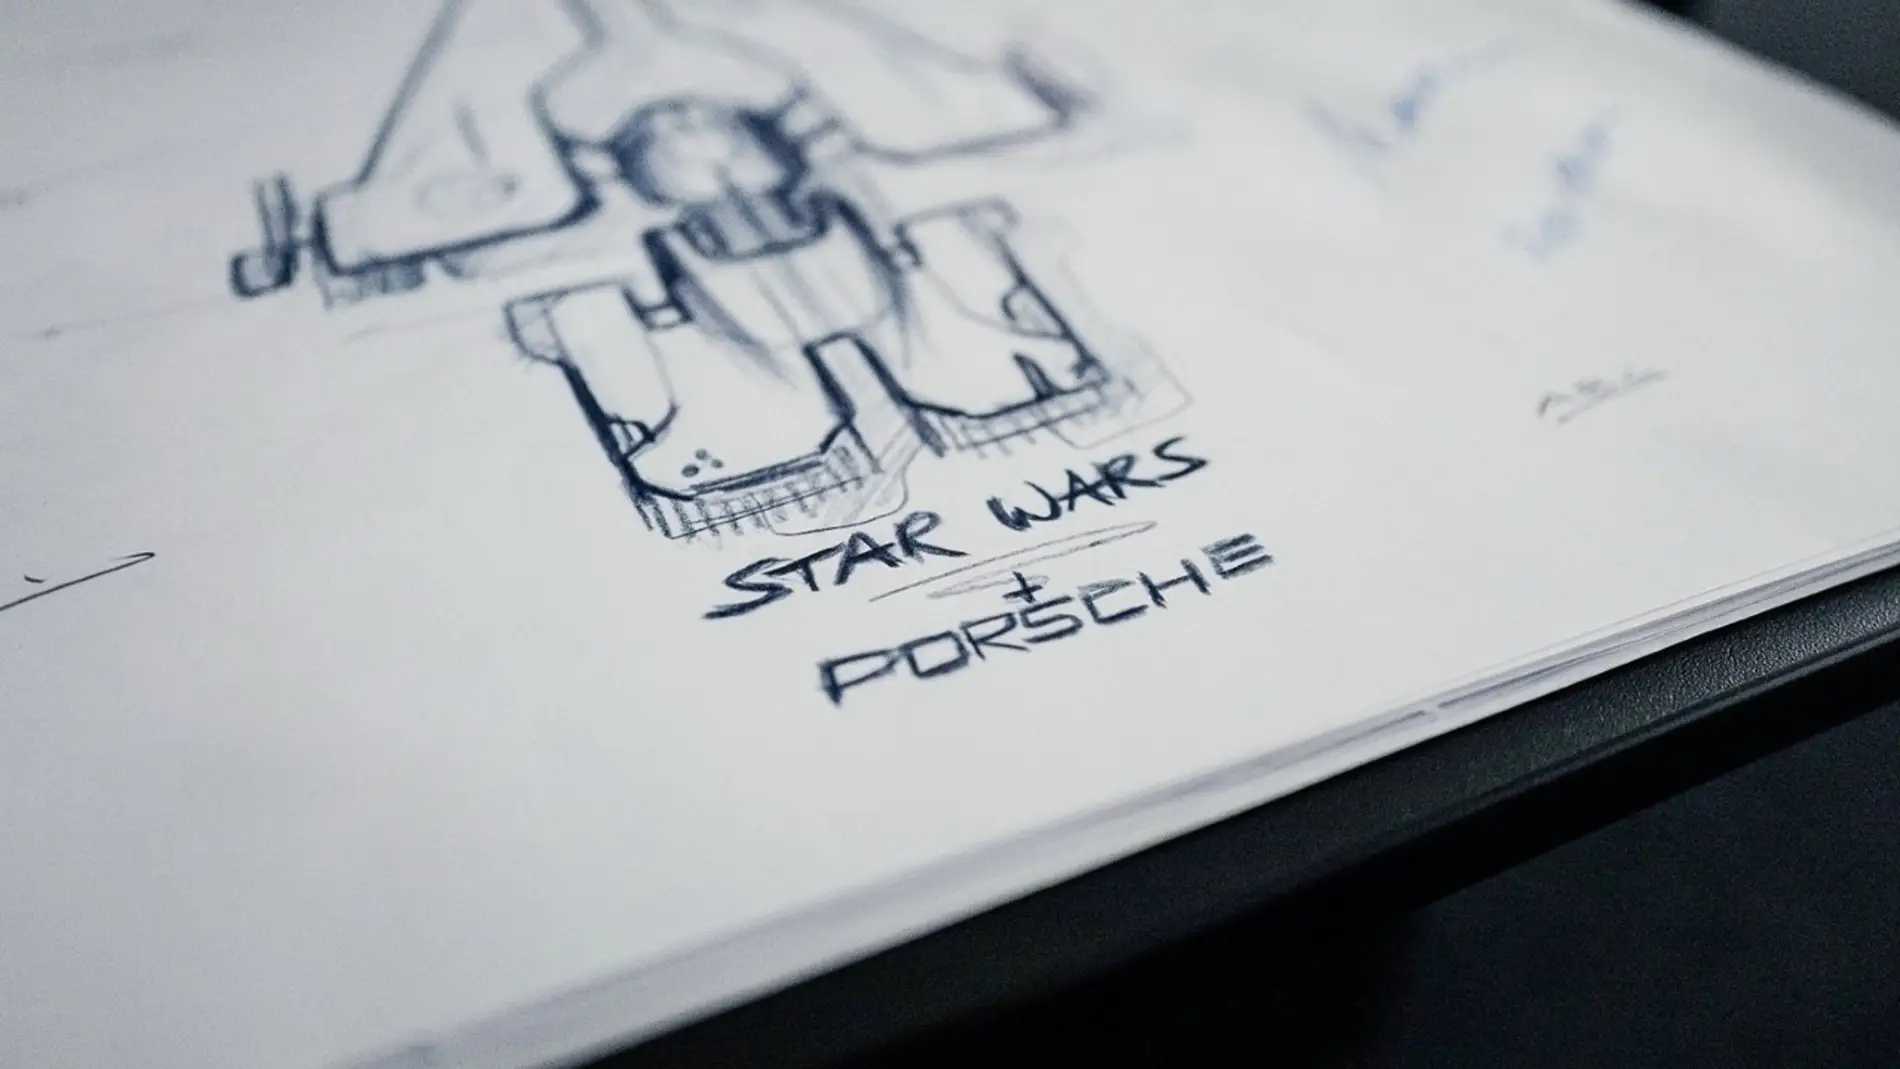 Teaser nave Porsche de Star Wars